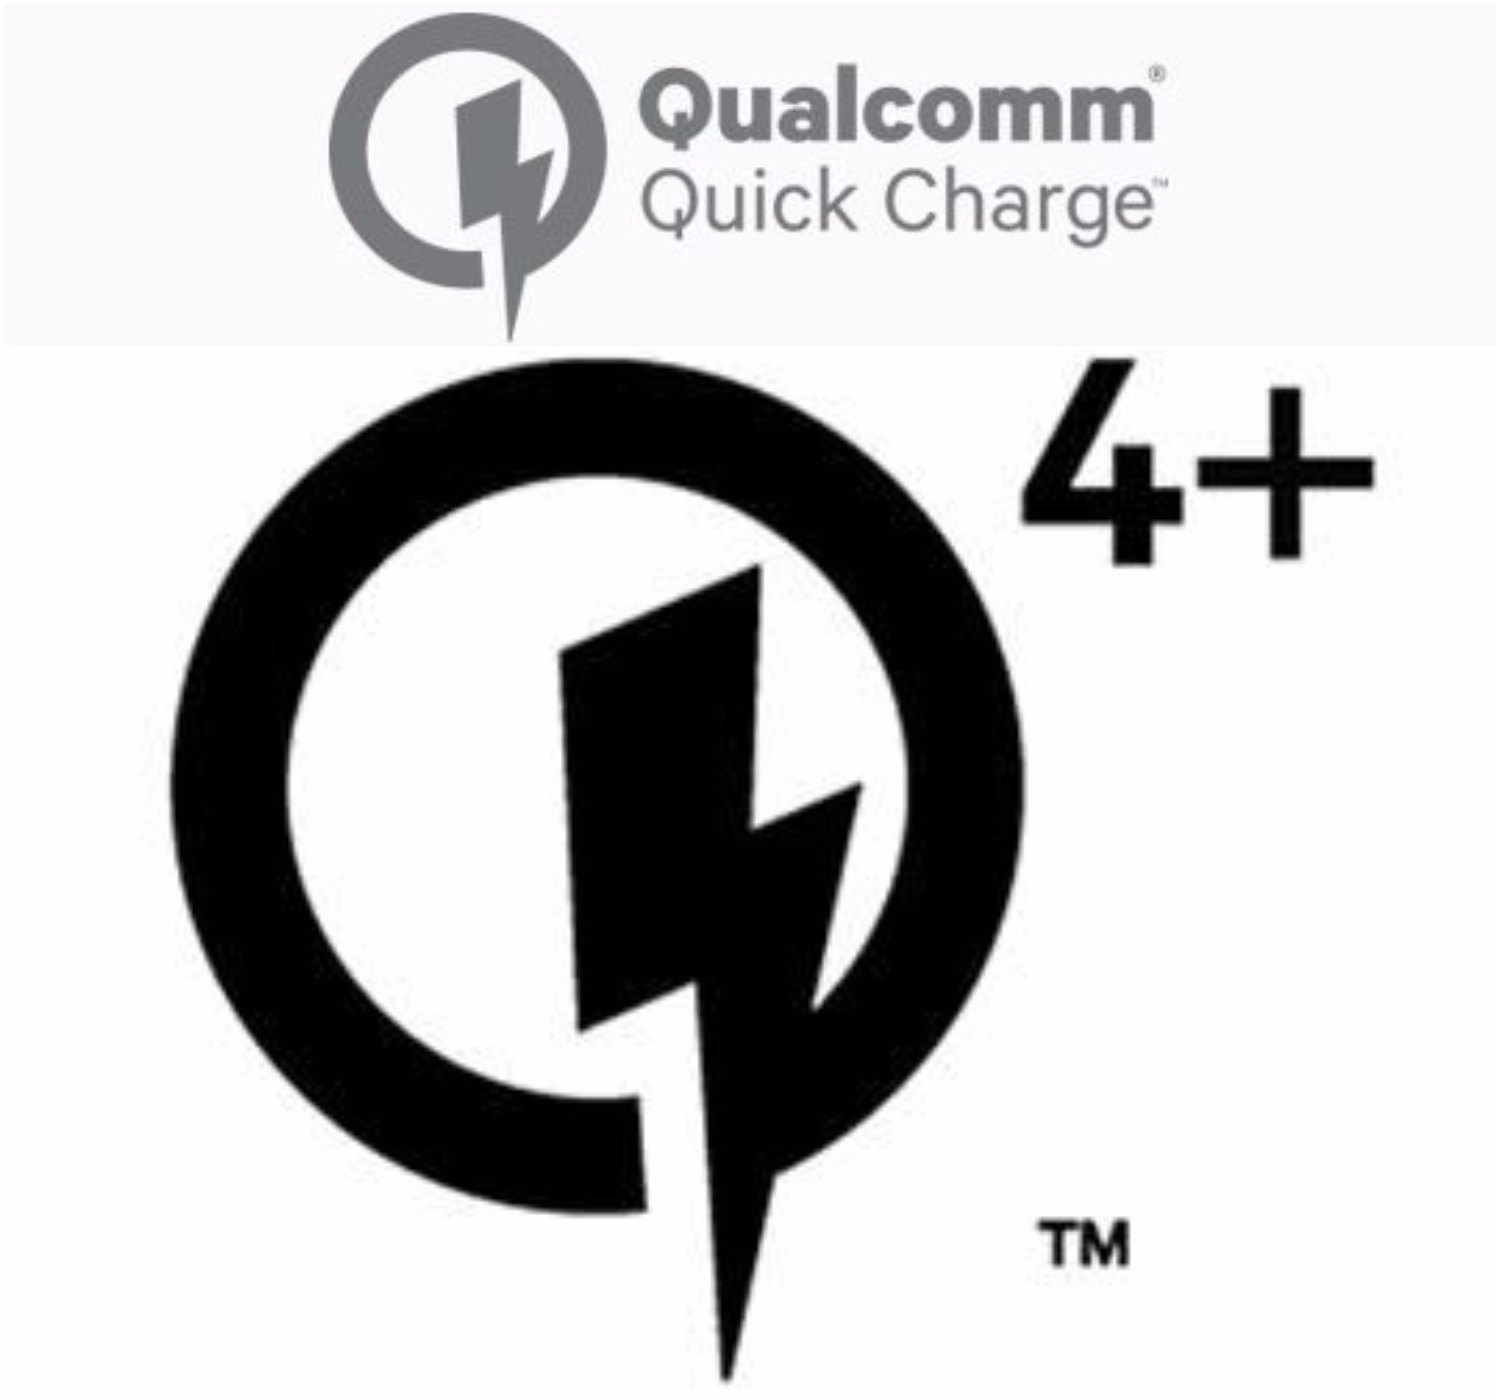 Quick Charge 4+ presentado por Qualcomm